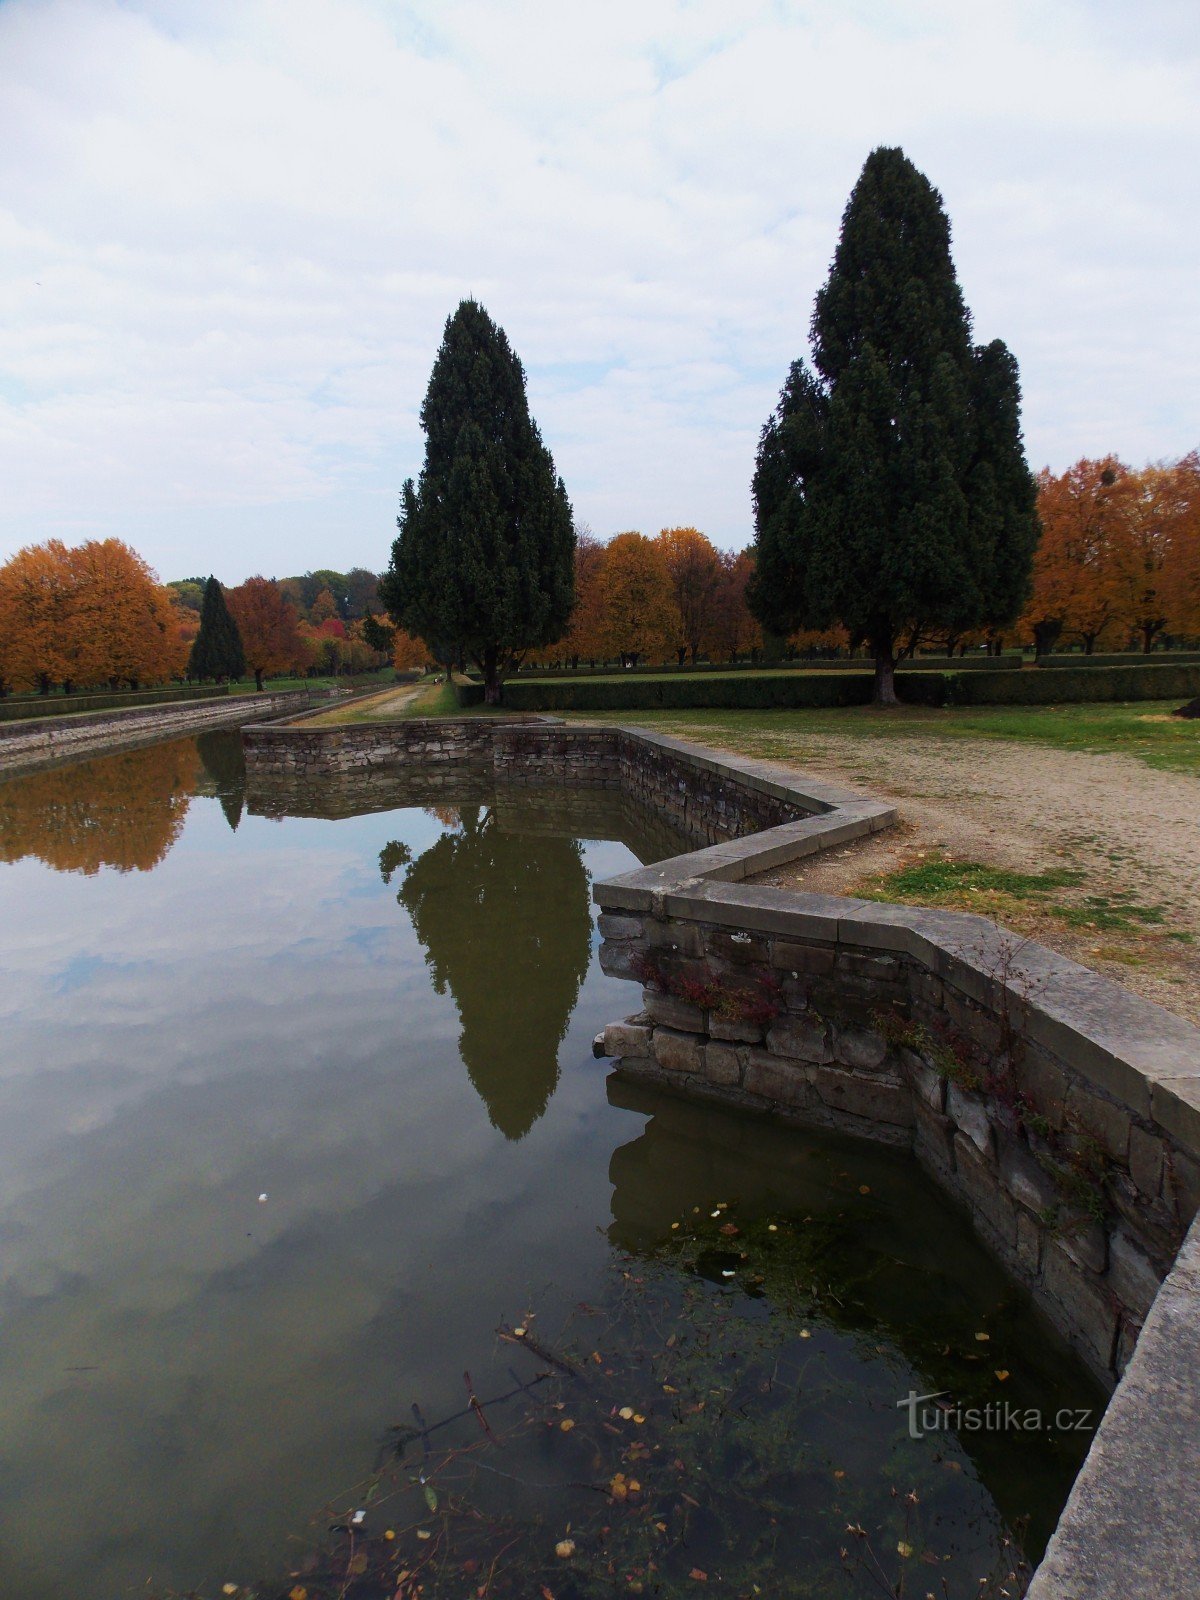 A superfície refletora dos canais de água no parque do castelo Holešov